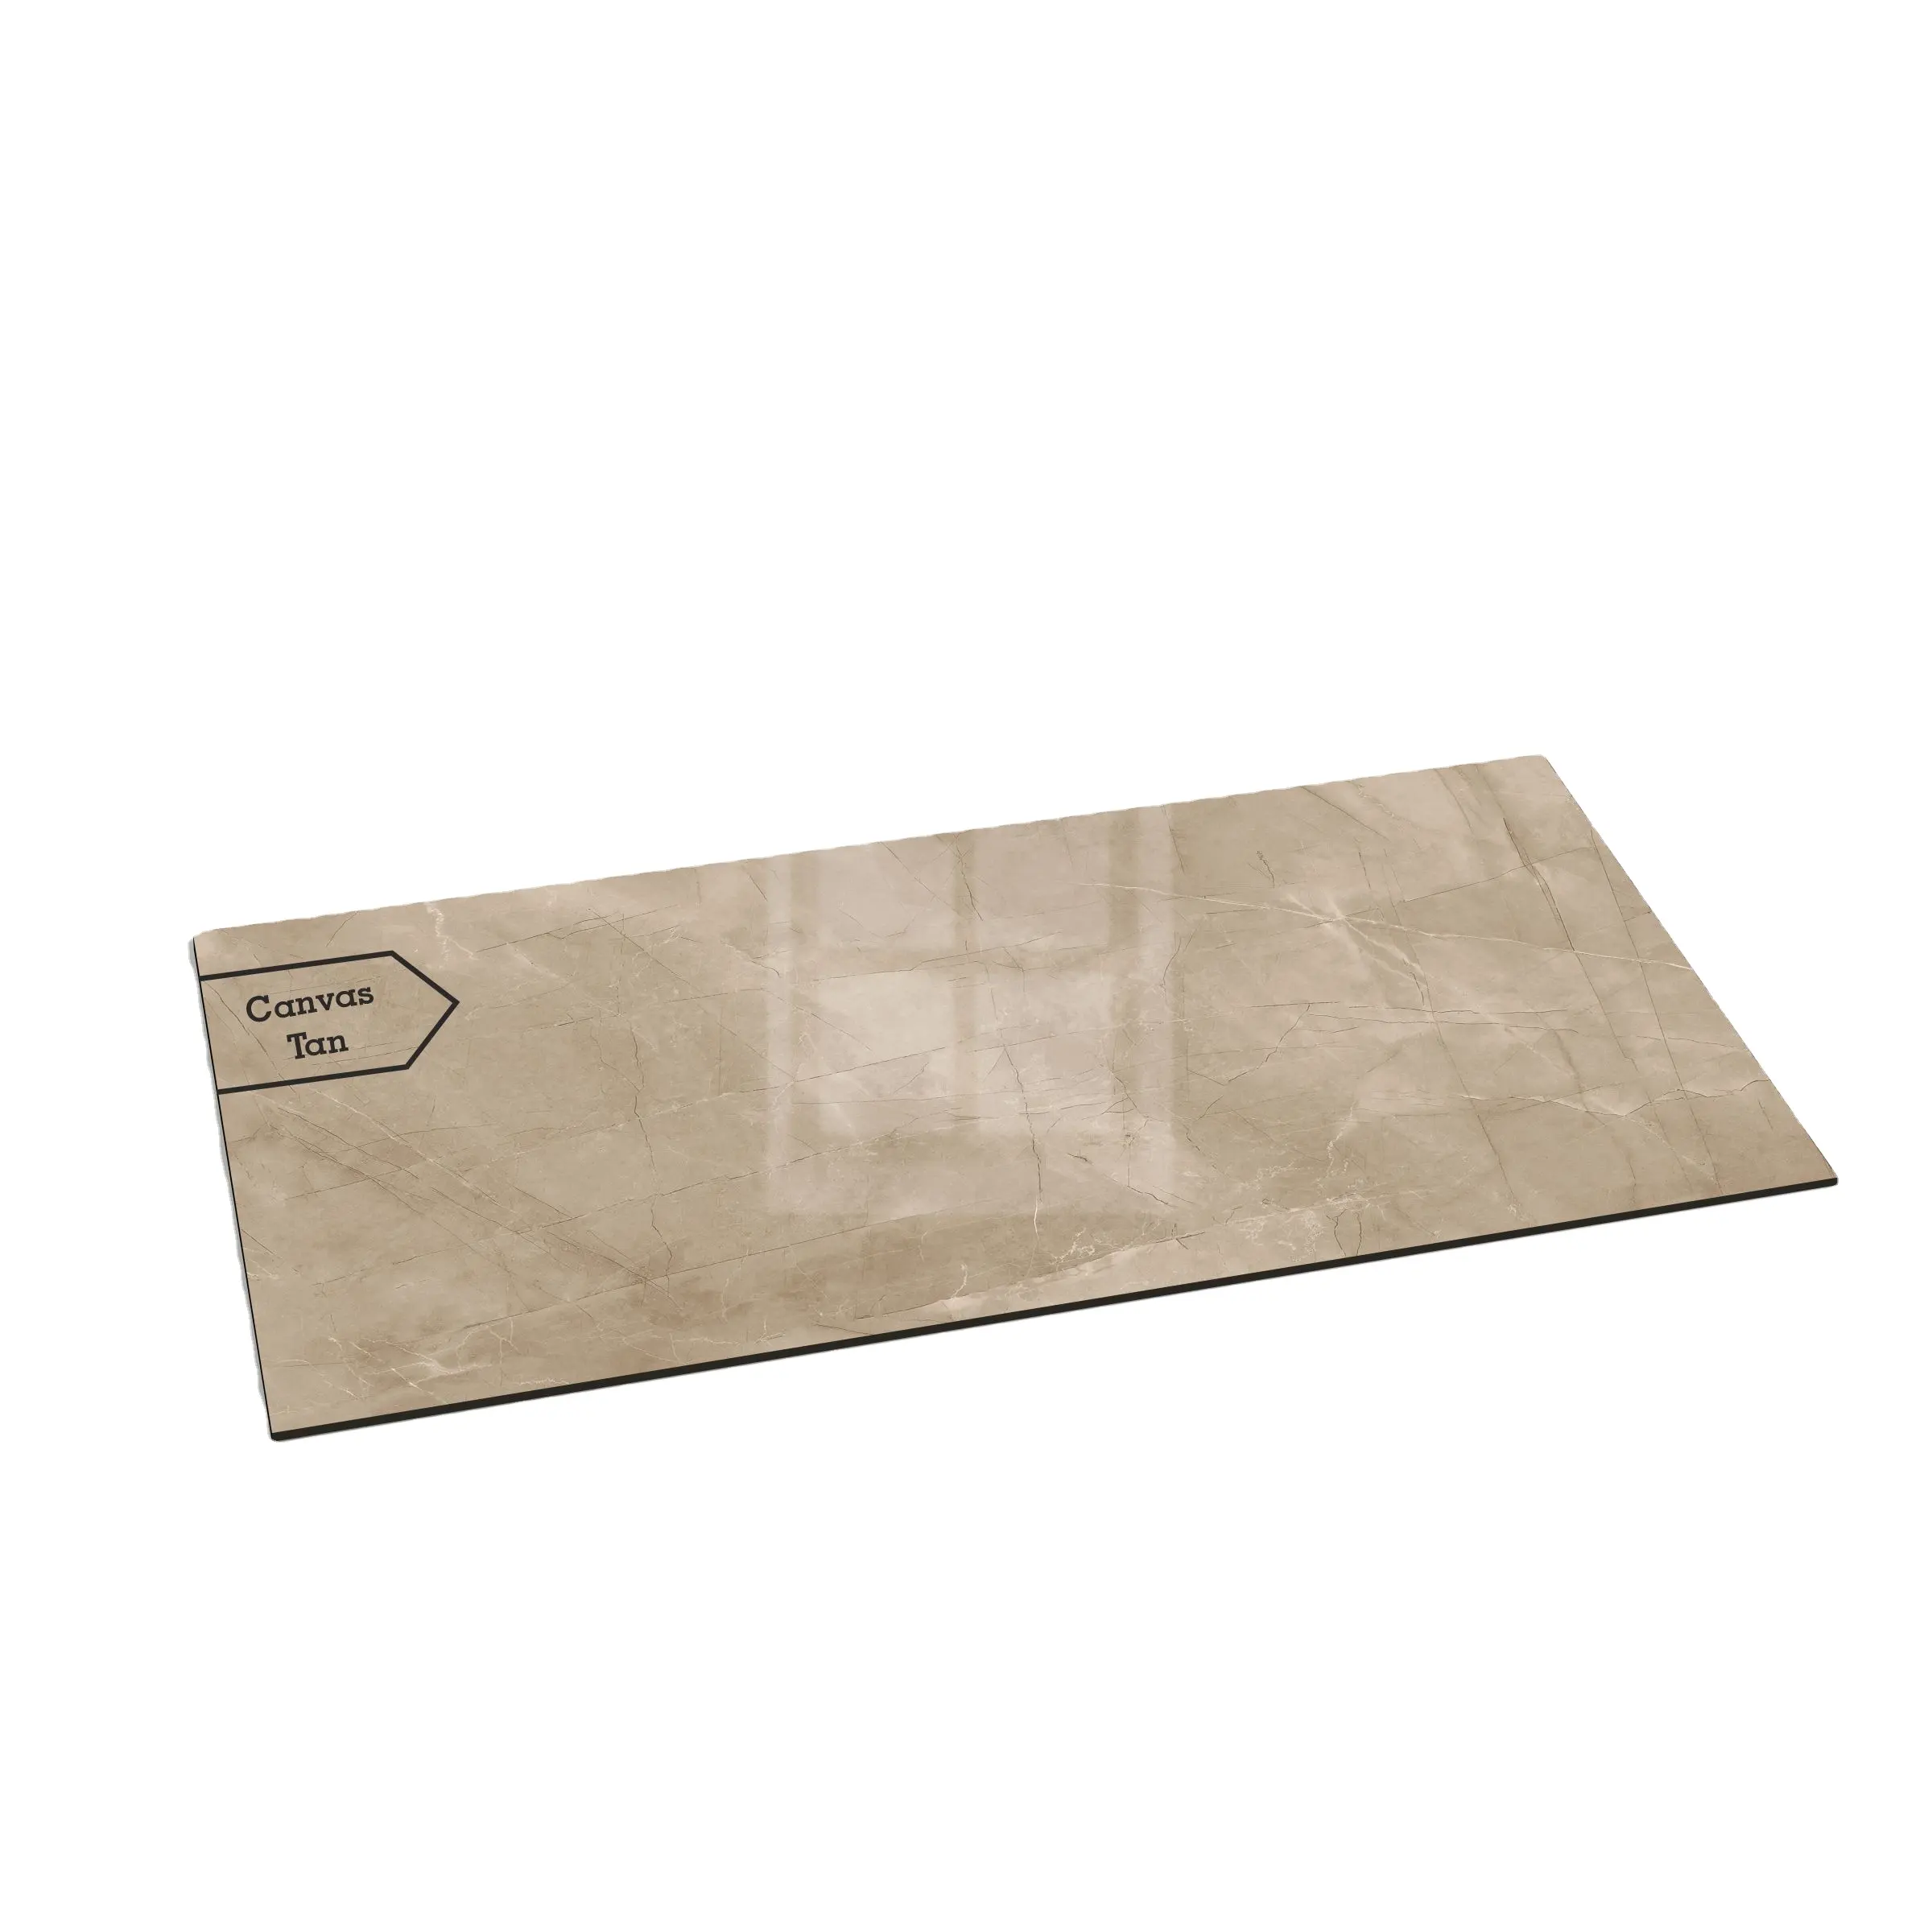 India 600X1200 Bone Kleur Goedkope Vloertegel Ontwerpen Oplosbare Zout Porselein Vloer Keramische Tegels Voor Home